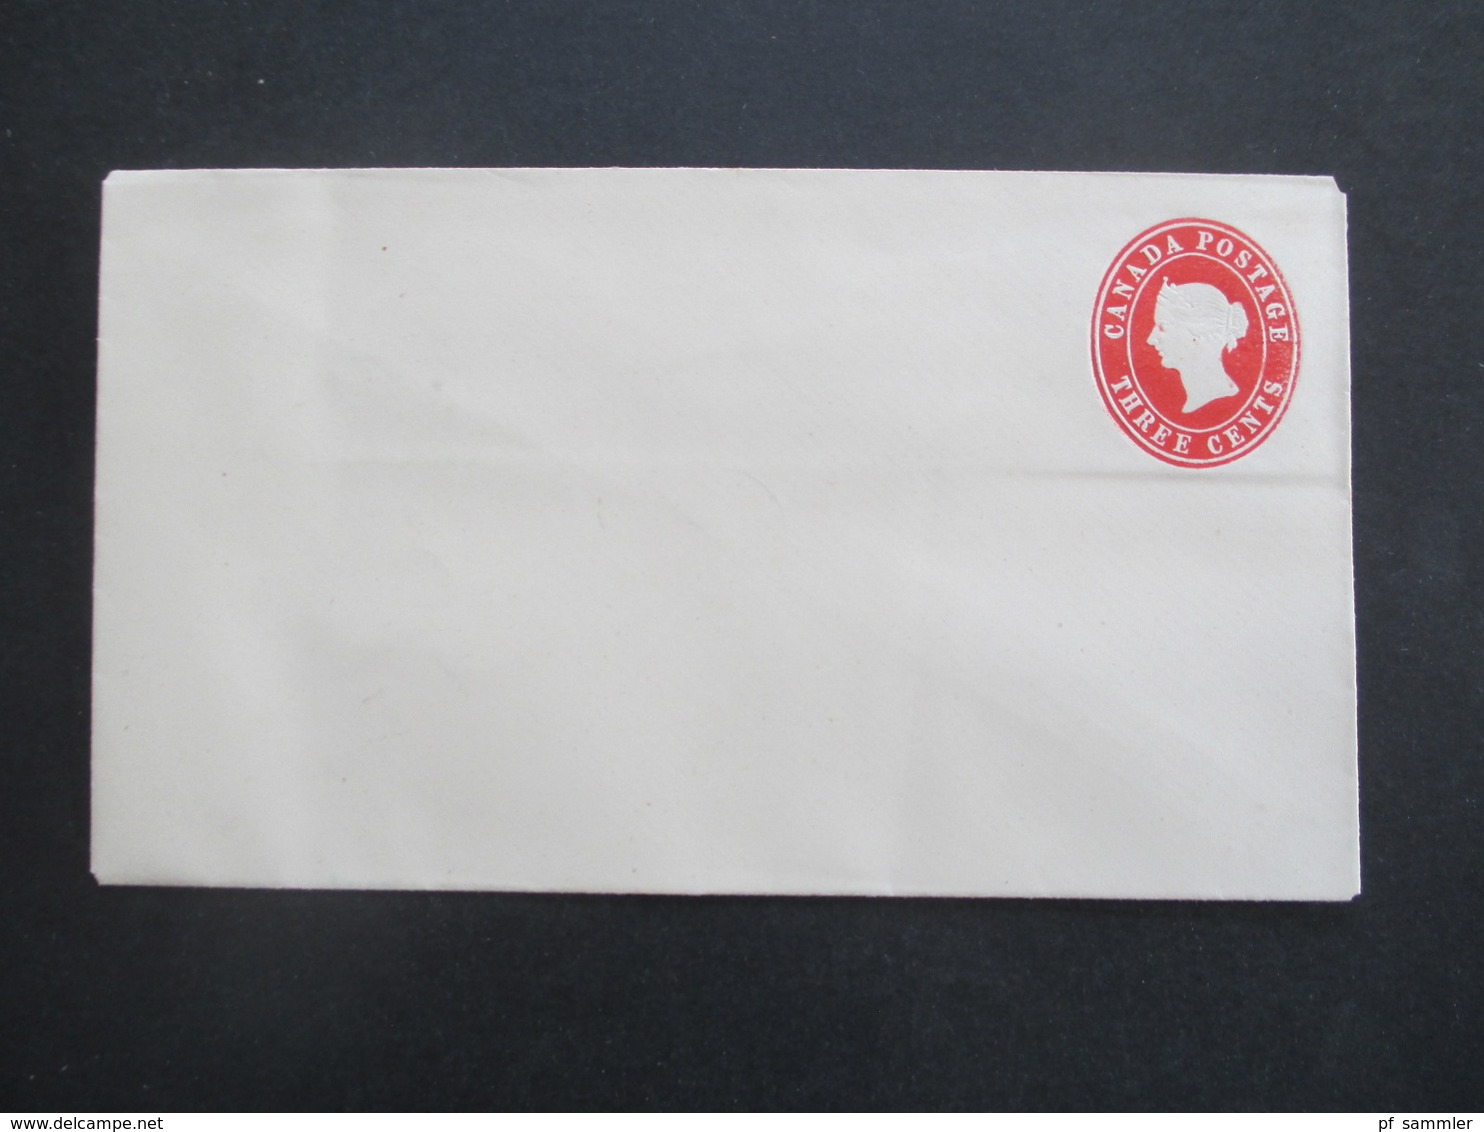 Victoria Canada Postage / Kanada 2x Ganzsachen Umschläge 3 Stück / 1x Letter Card / 1x Streifband ungebraucht!